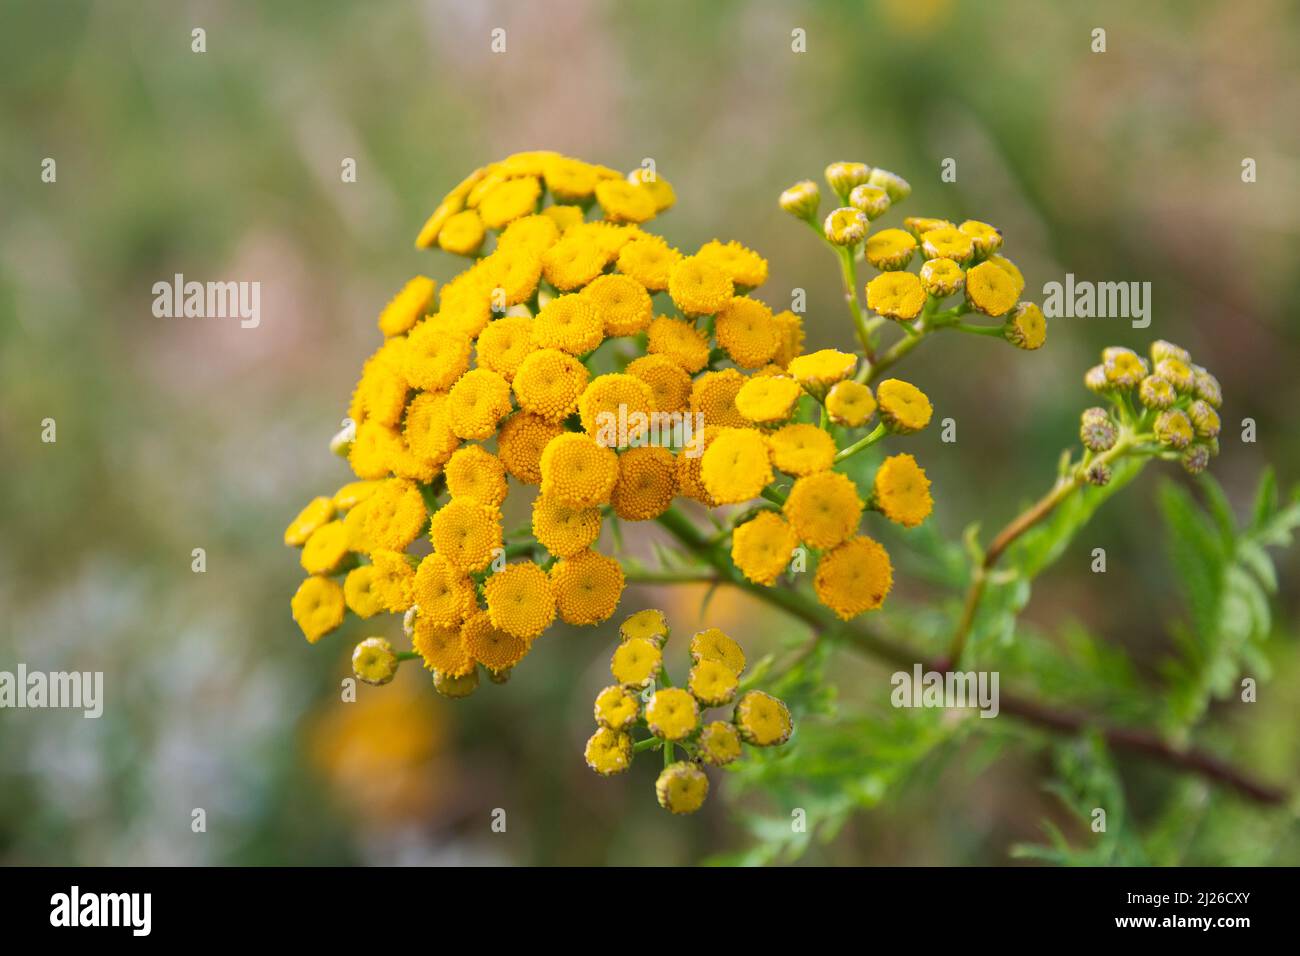 Gelbe, giftige Rainfarn Blüte im Sommer Foto Stock